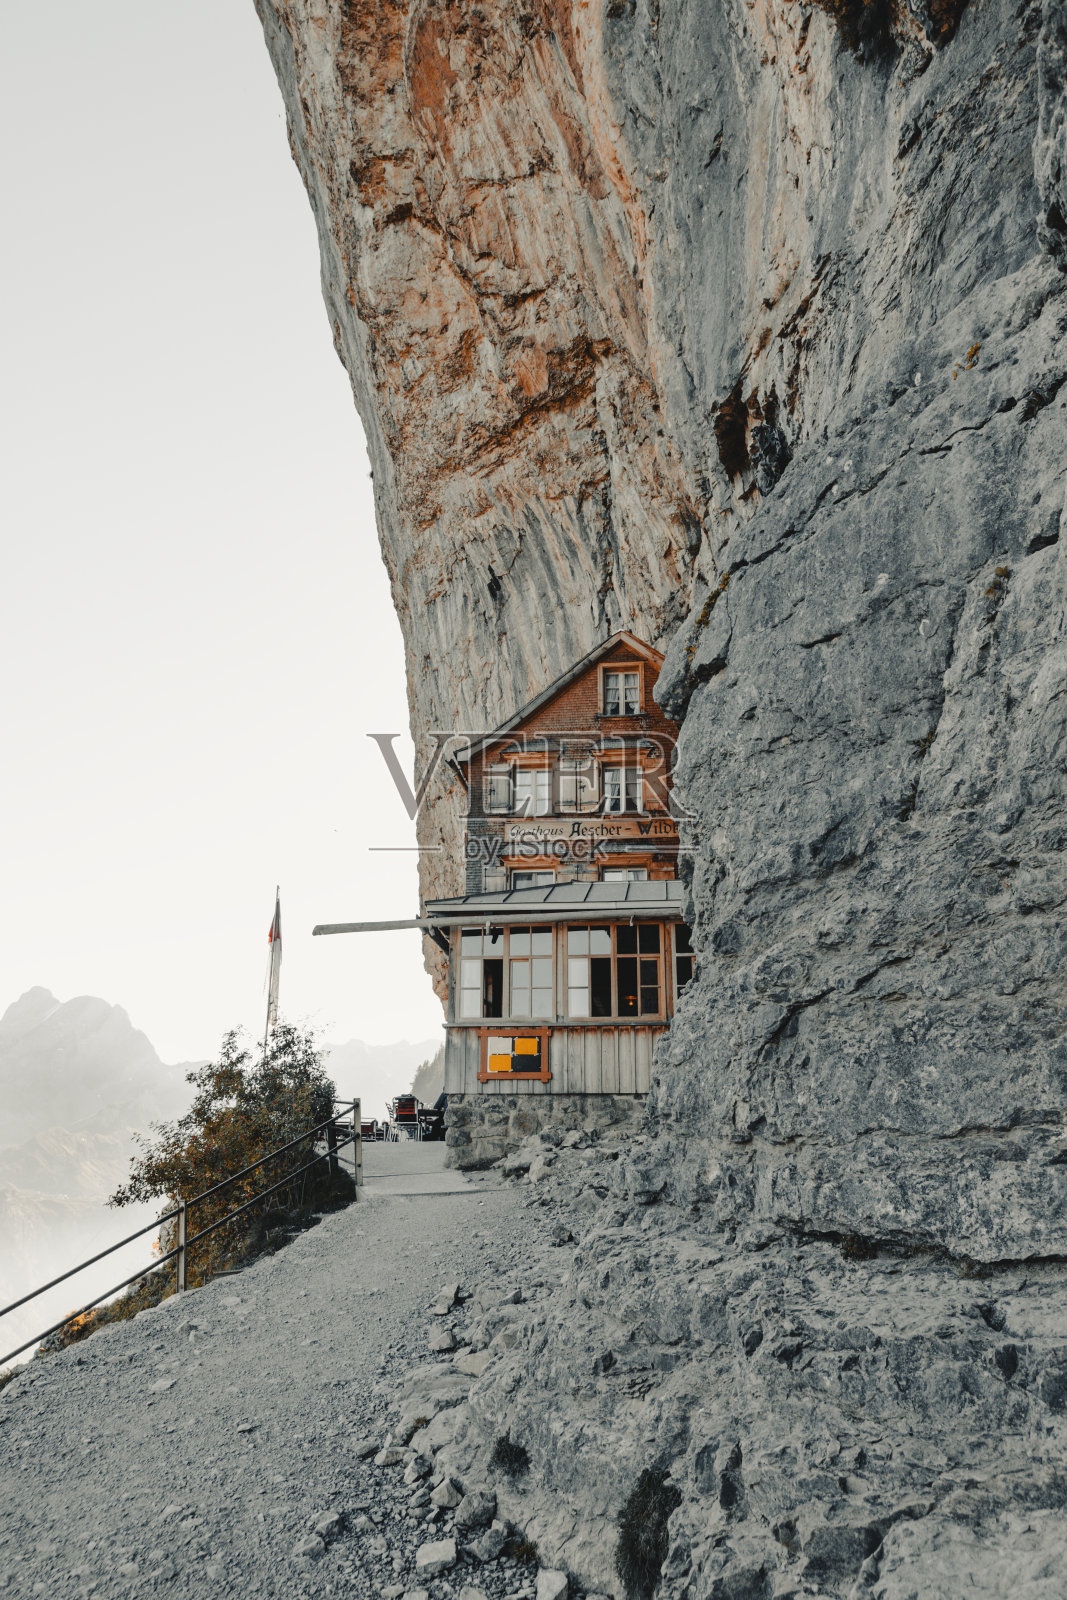 瑞士悬崖酒店图片